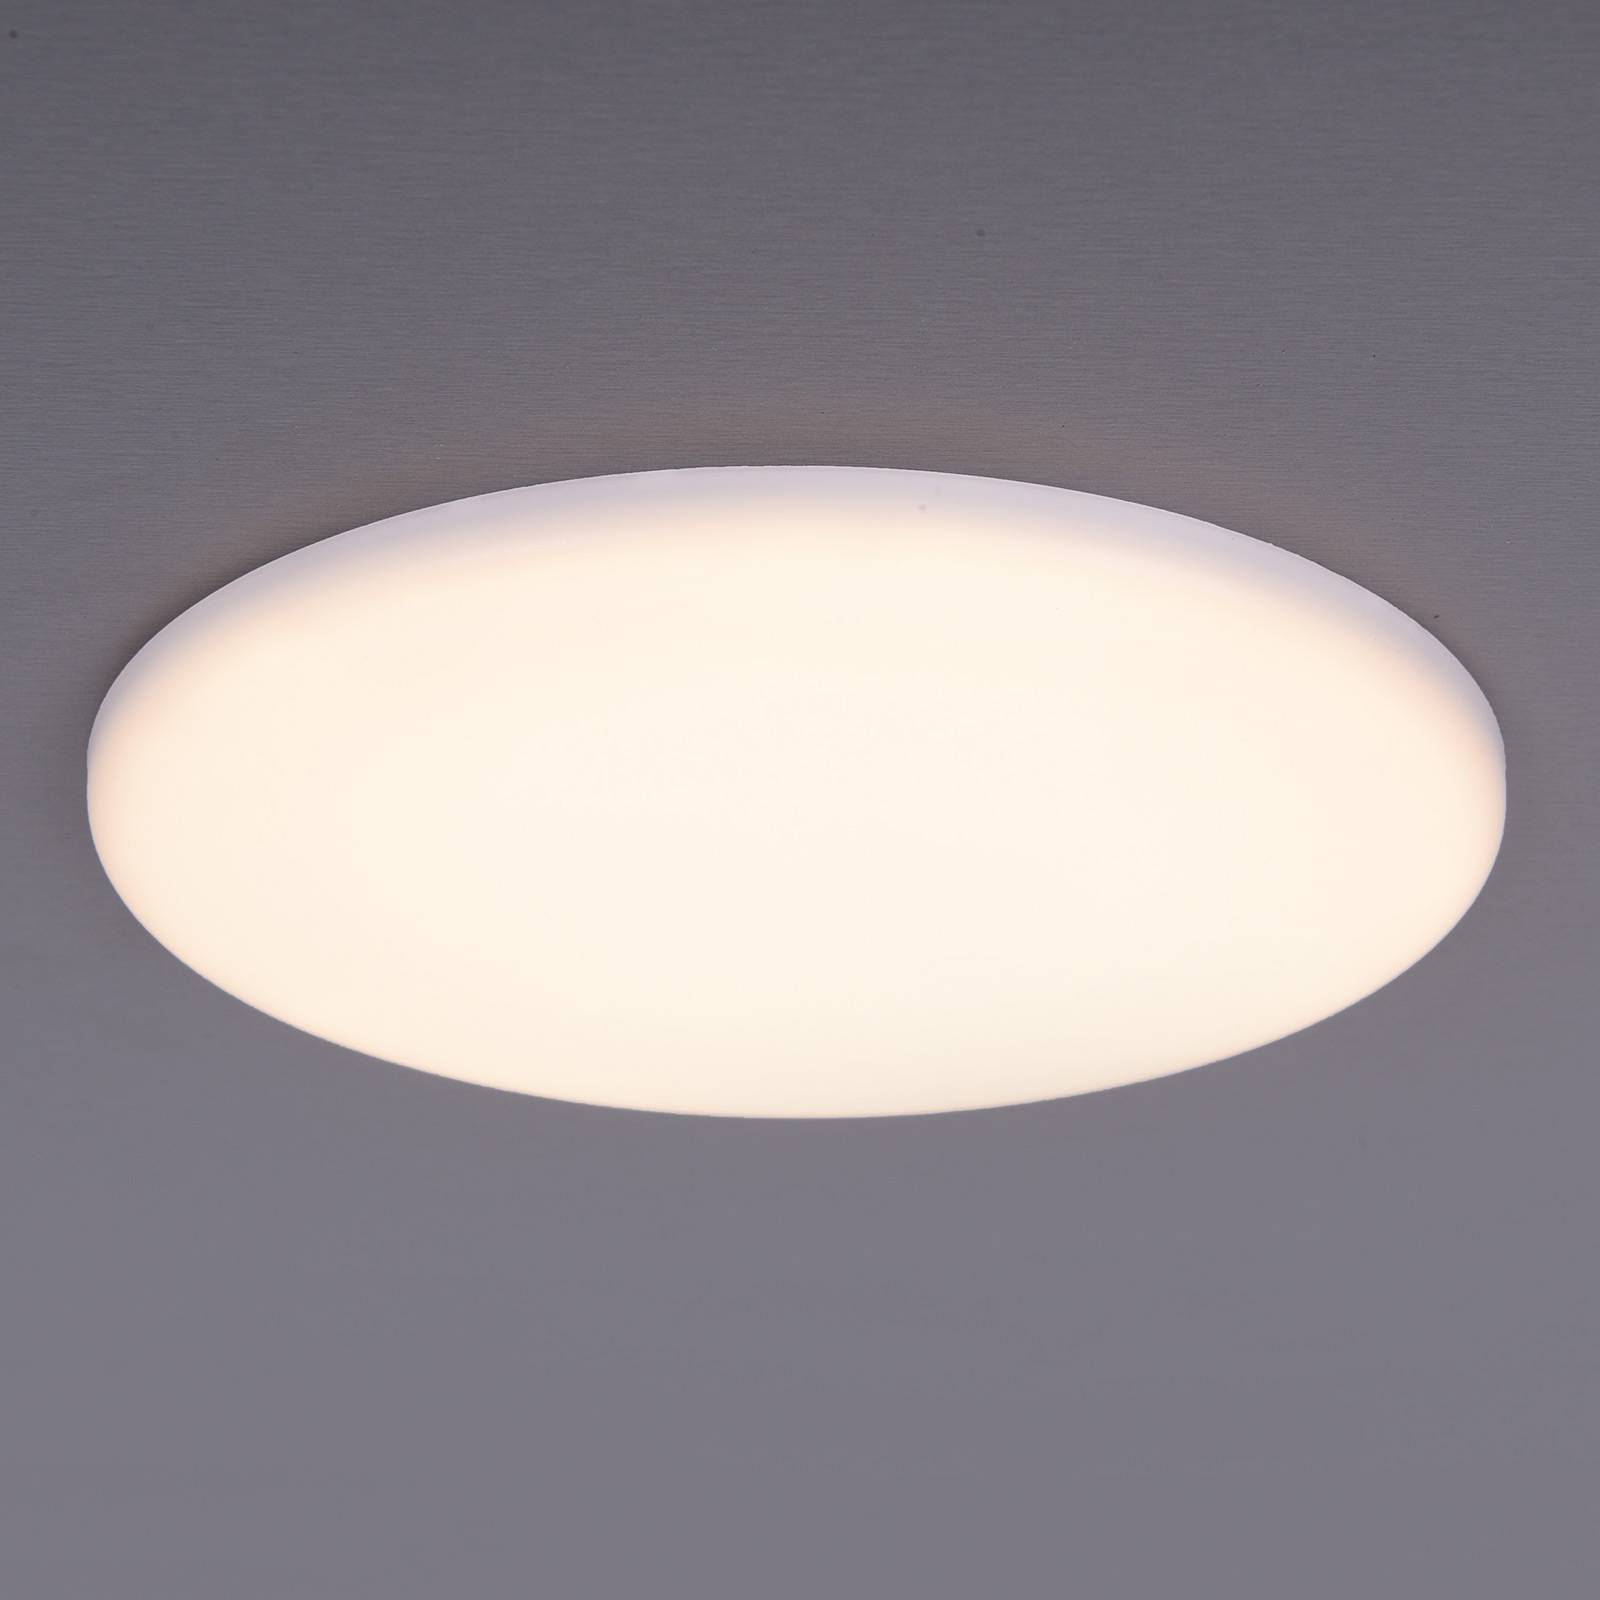 Lampe encastrable LED Sula, rond, IP66, Ø 21,5 cm